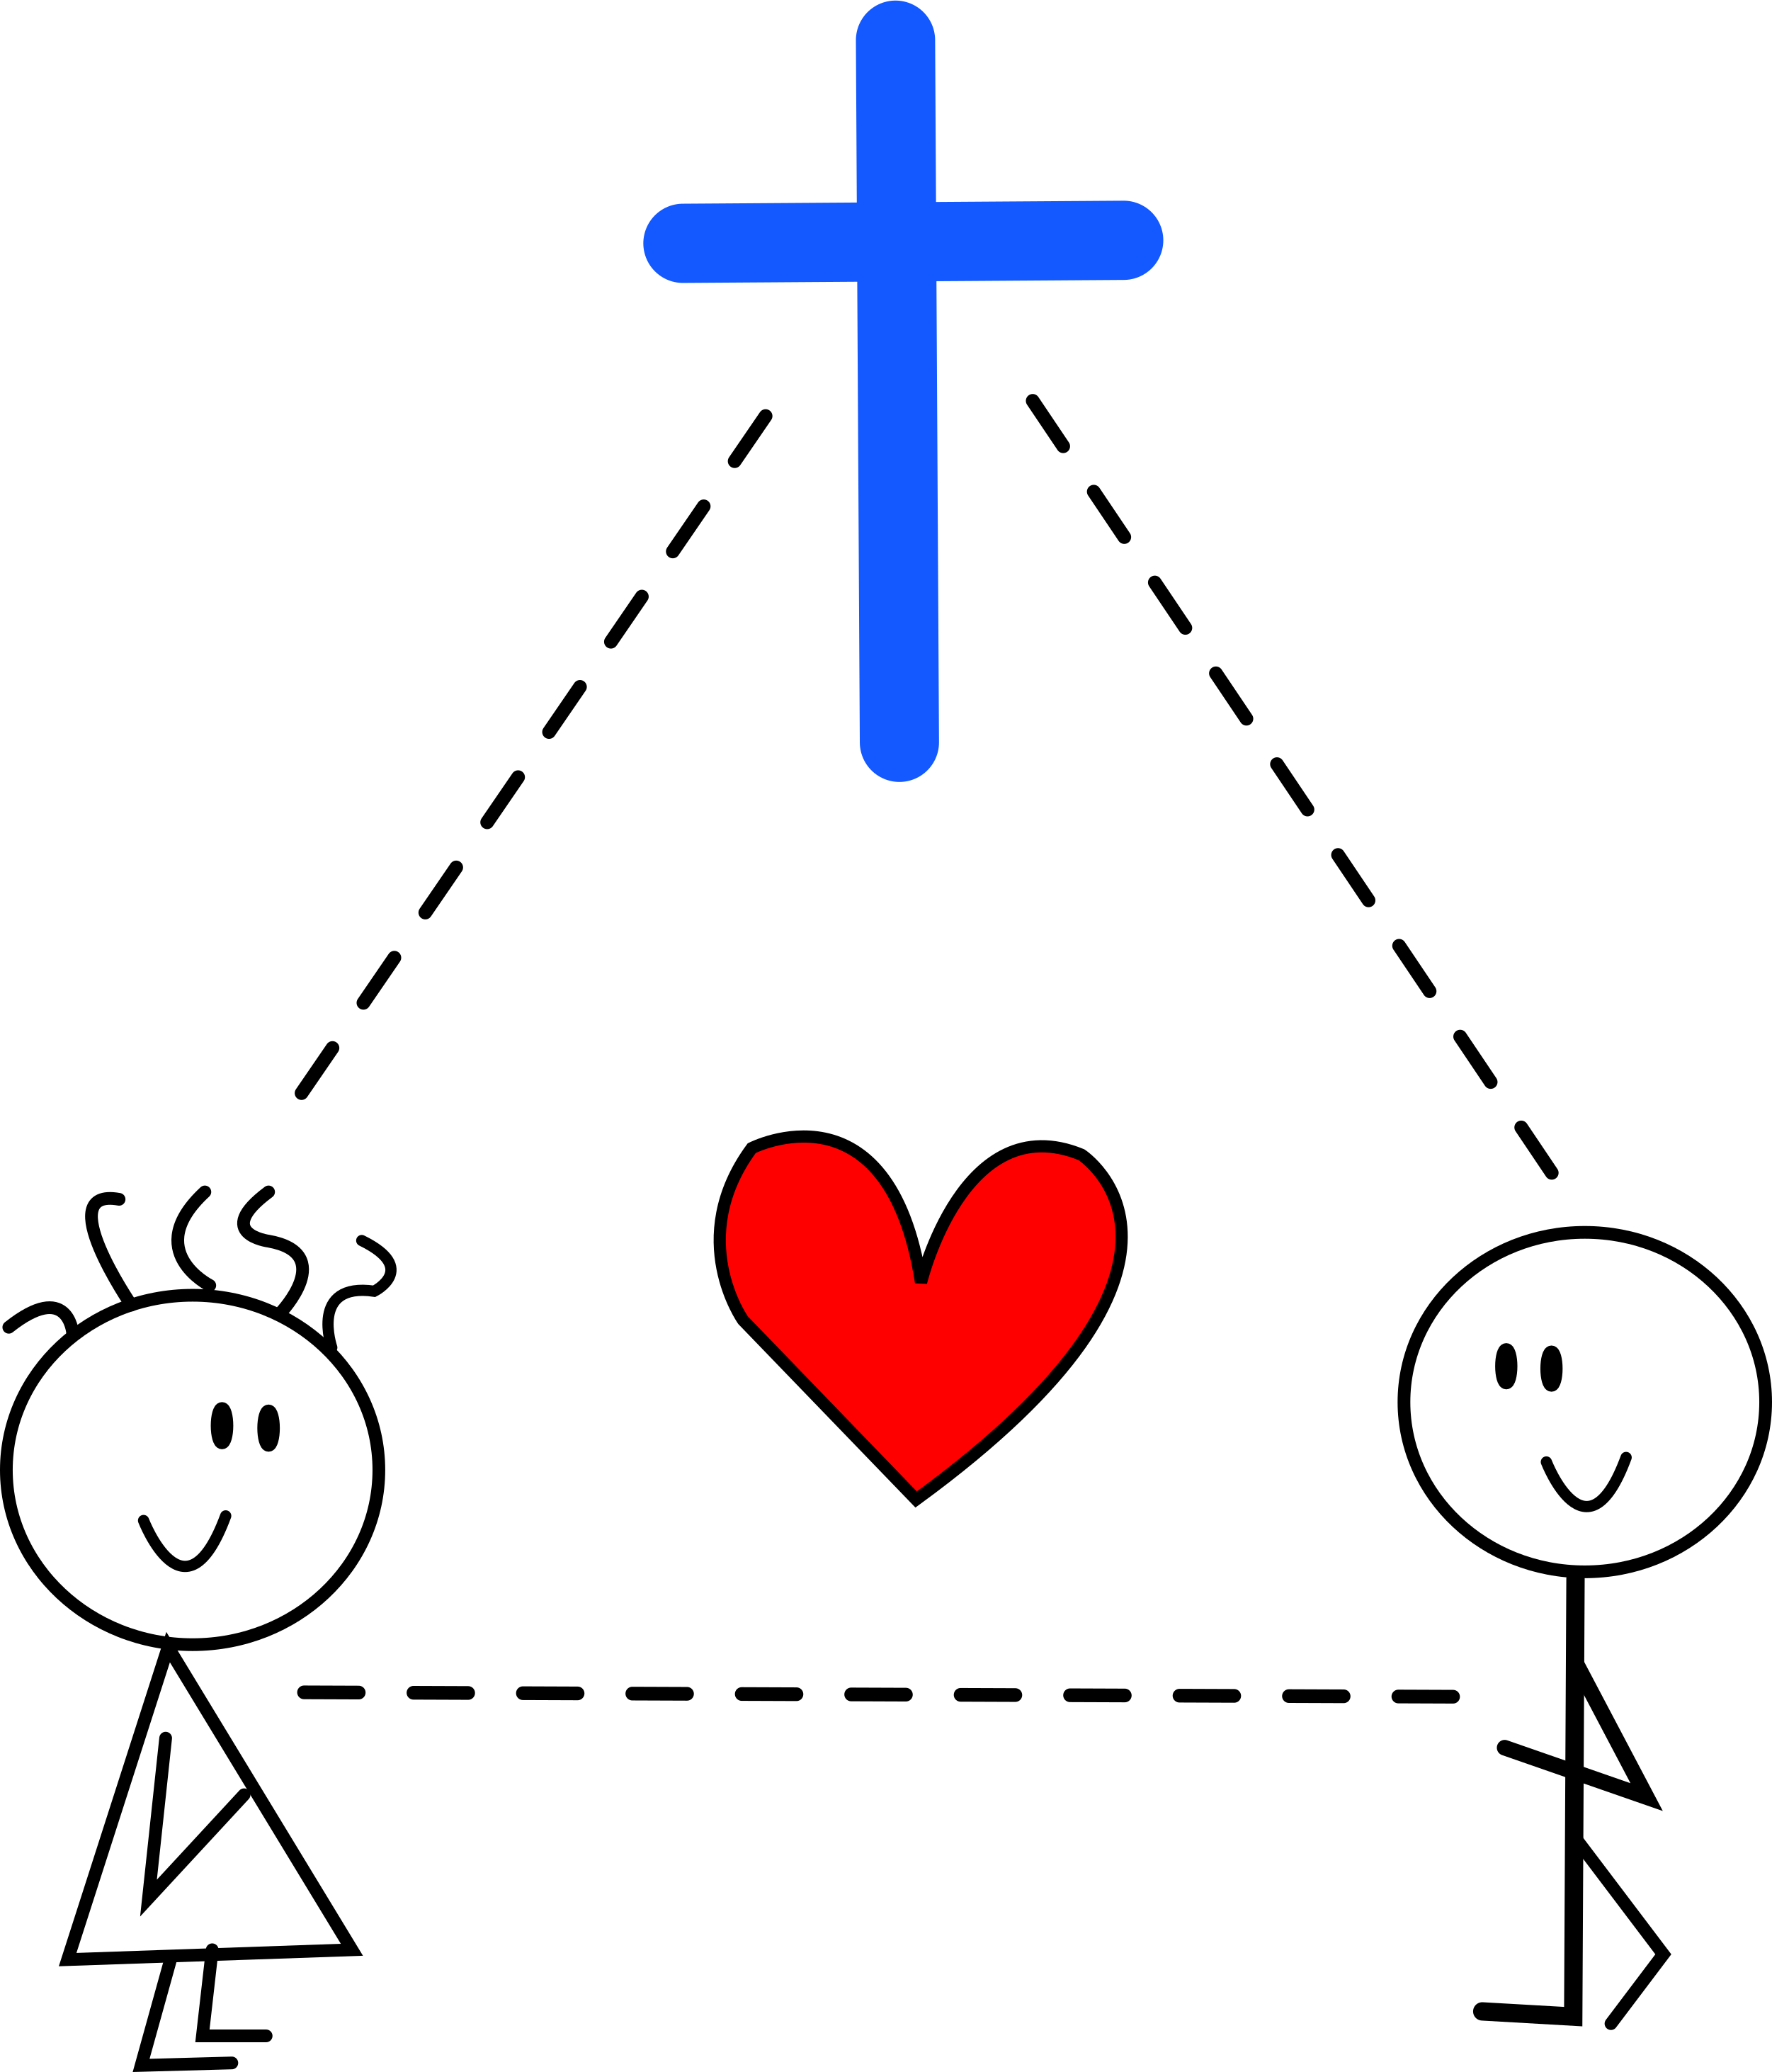 A Christian’s Love